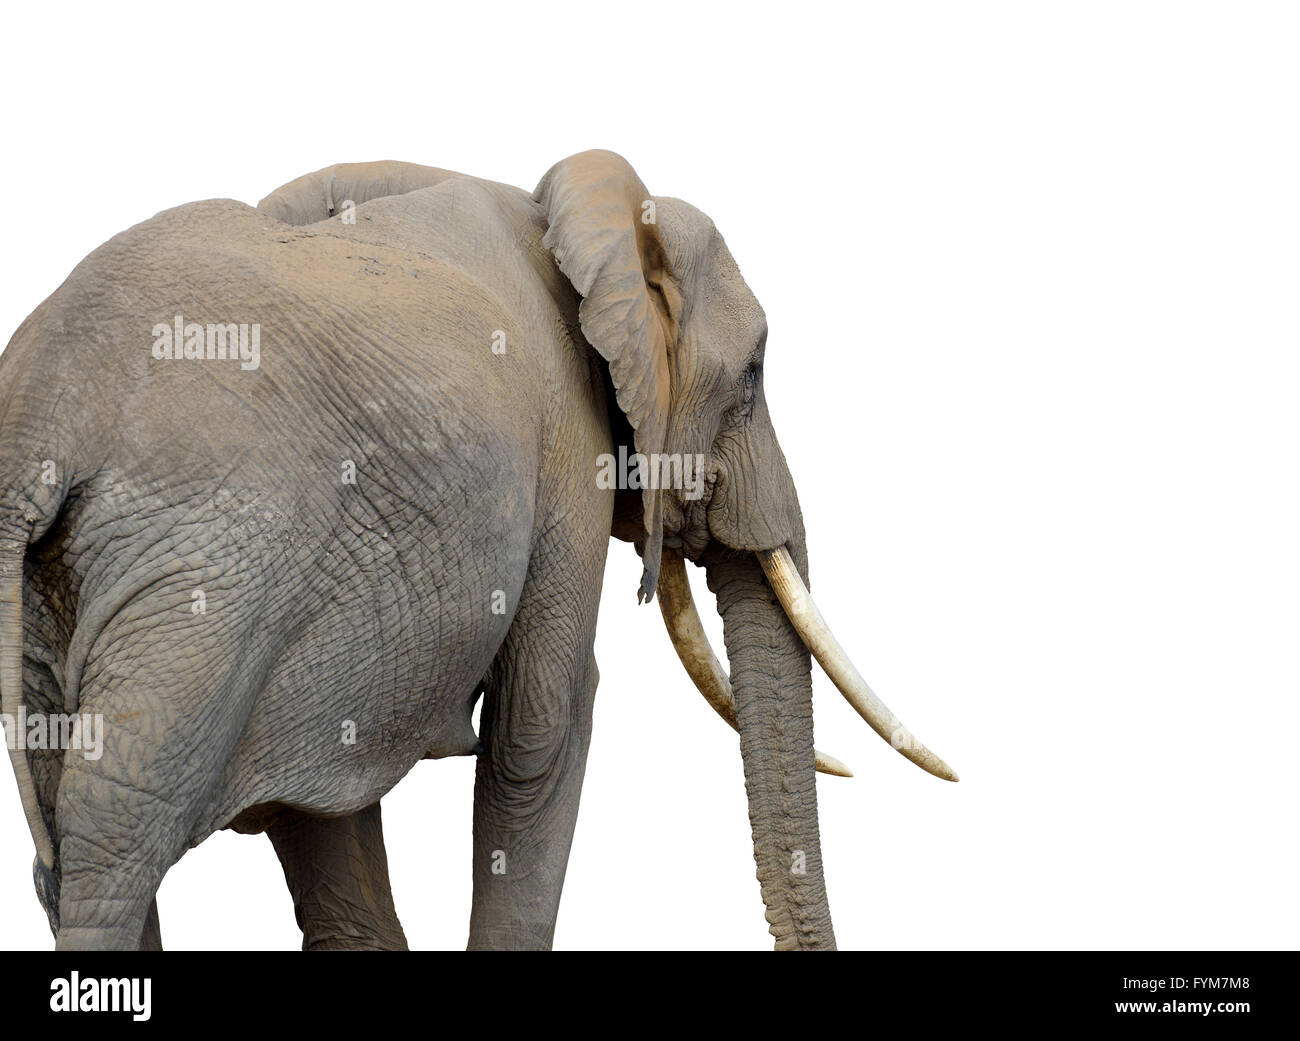 Elephant isolated on white background Stock Photo